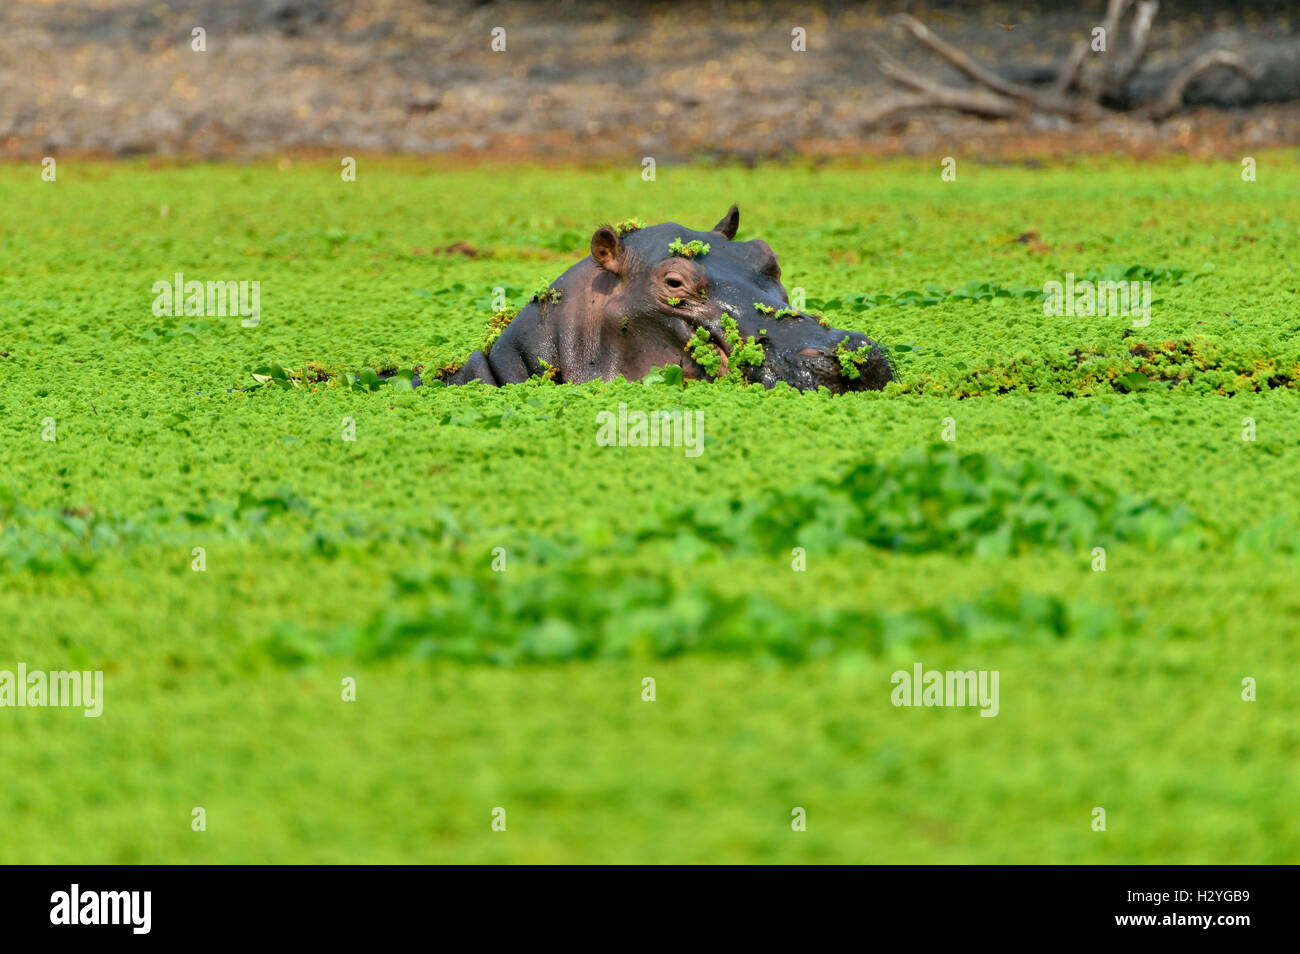 Hippo (Hippopotamus amphibius), among water plants, Mana Pools National Park, Mashonaland West Province, Zimbabwe Stock Photo